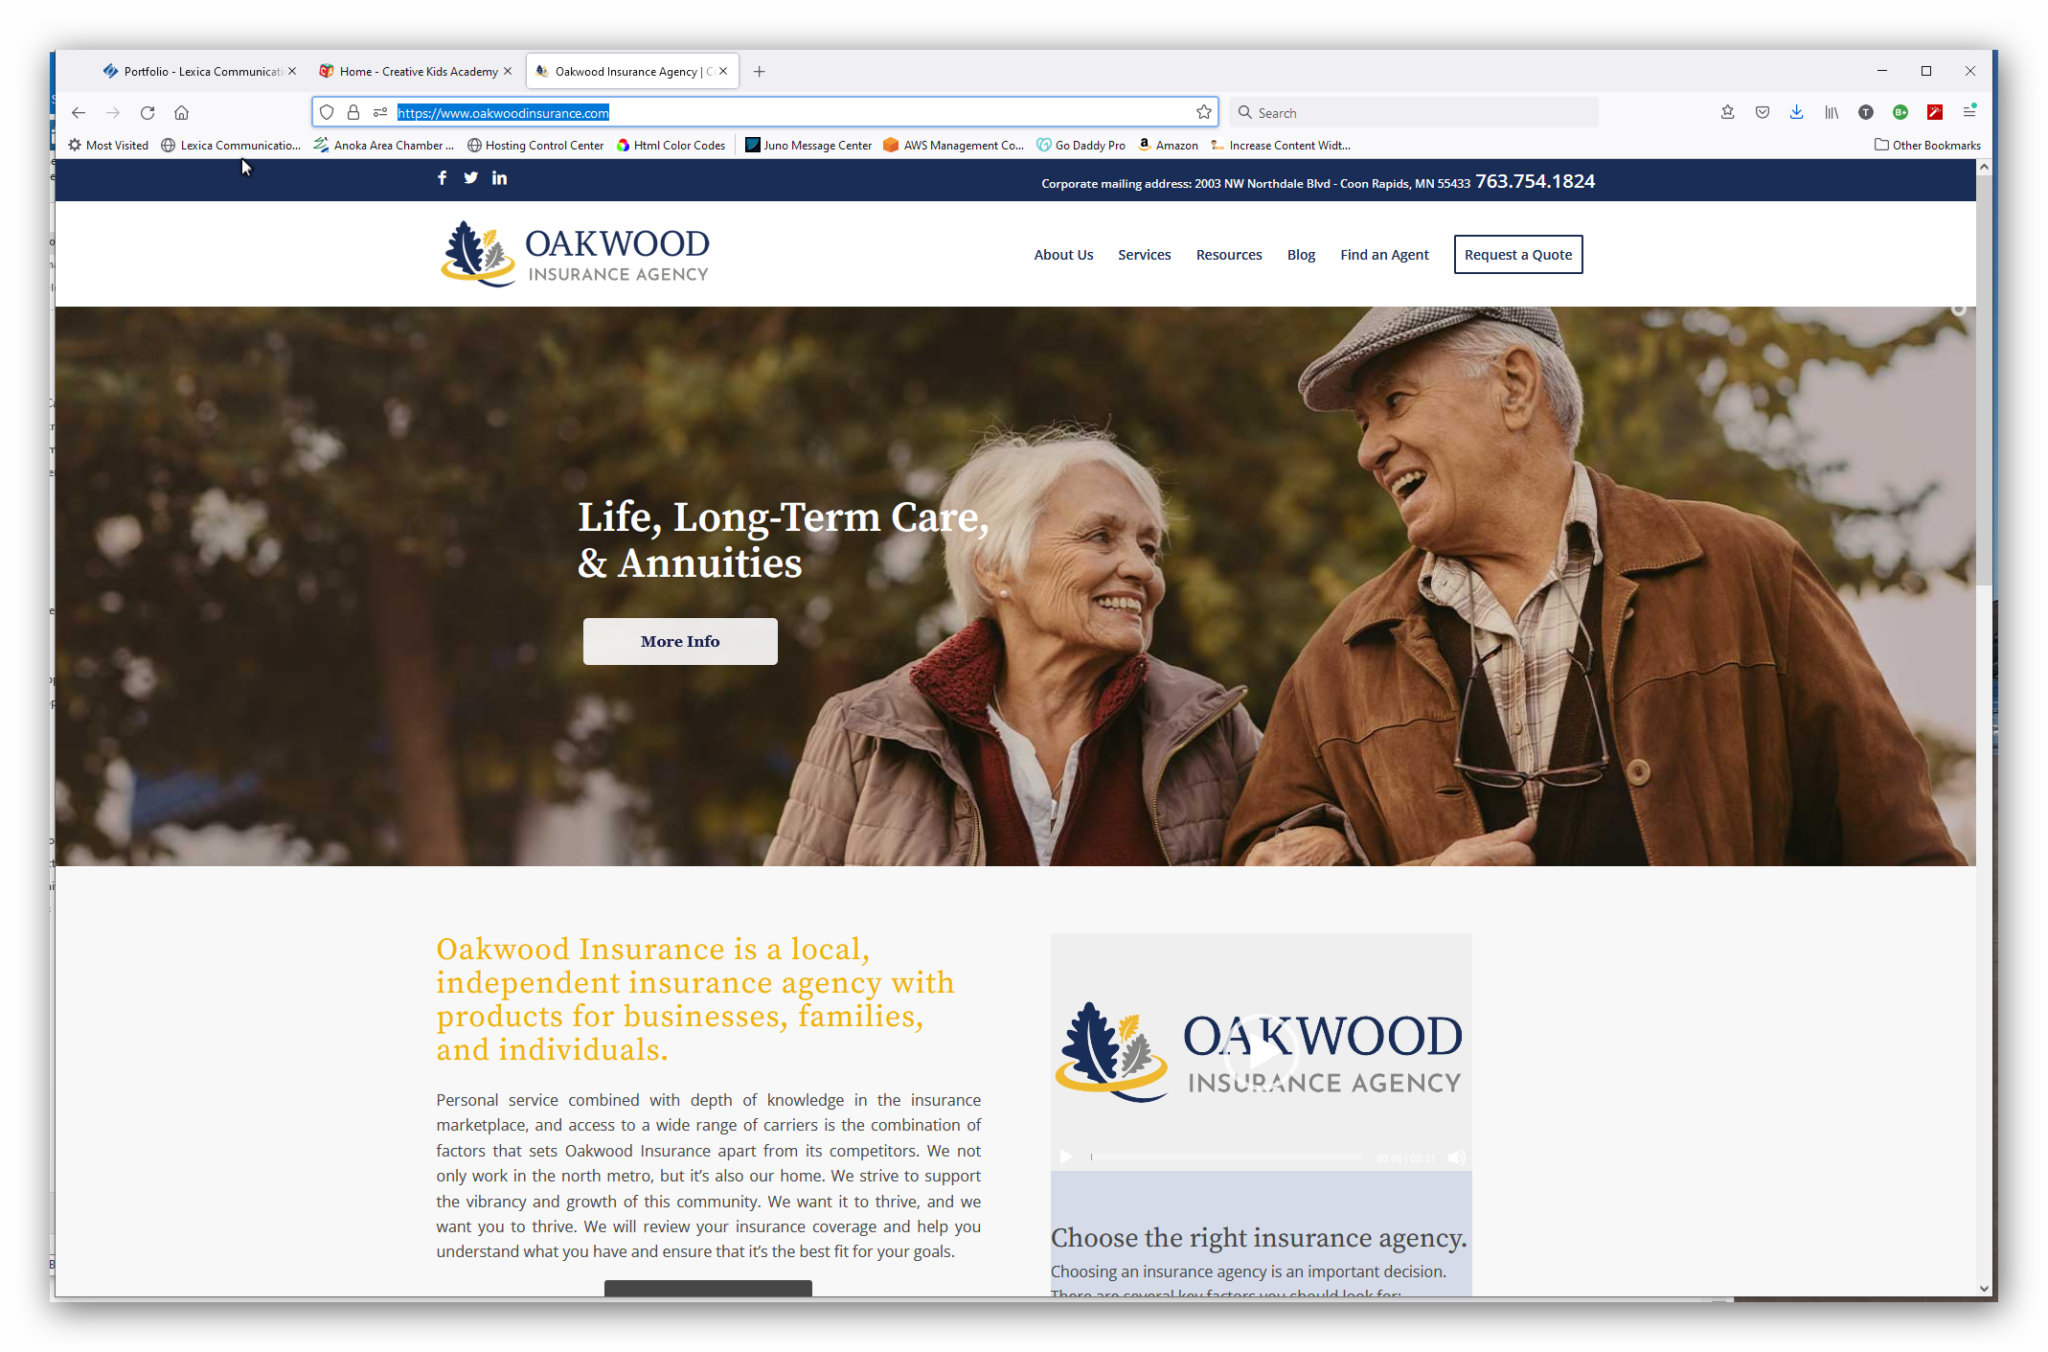 Oakwood Insurance Company Lexica Communications, Inc.